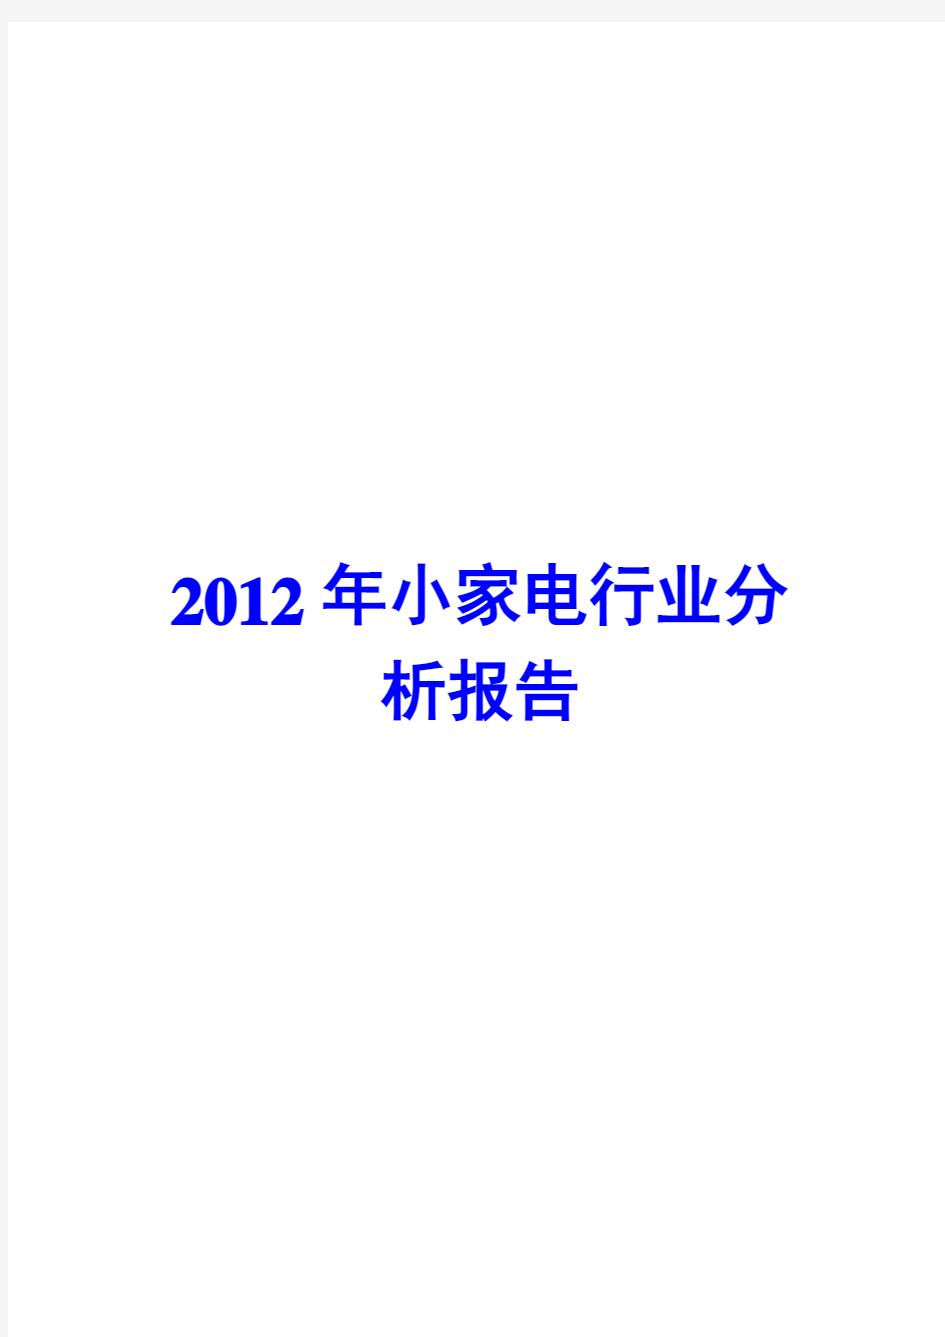 小家电行业分析报告2012